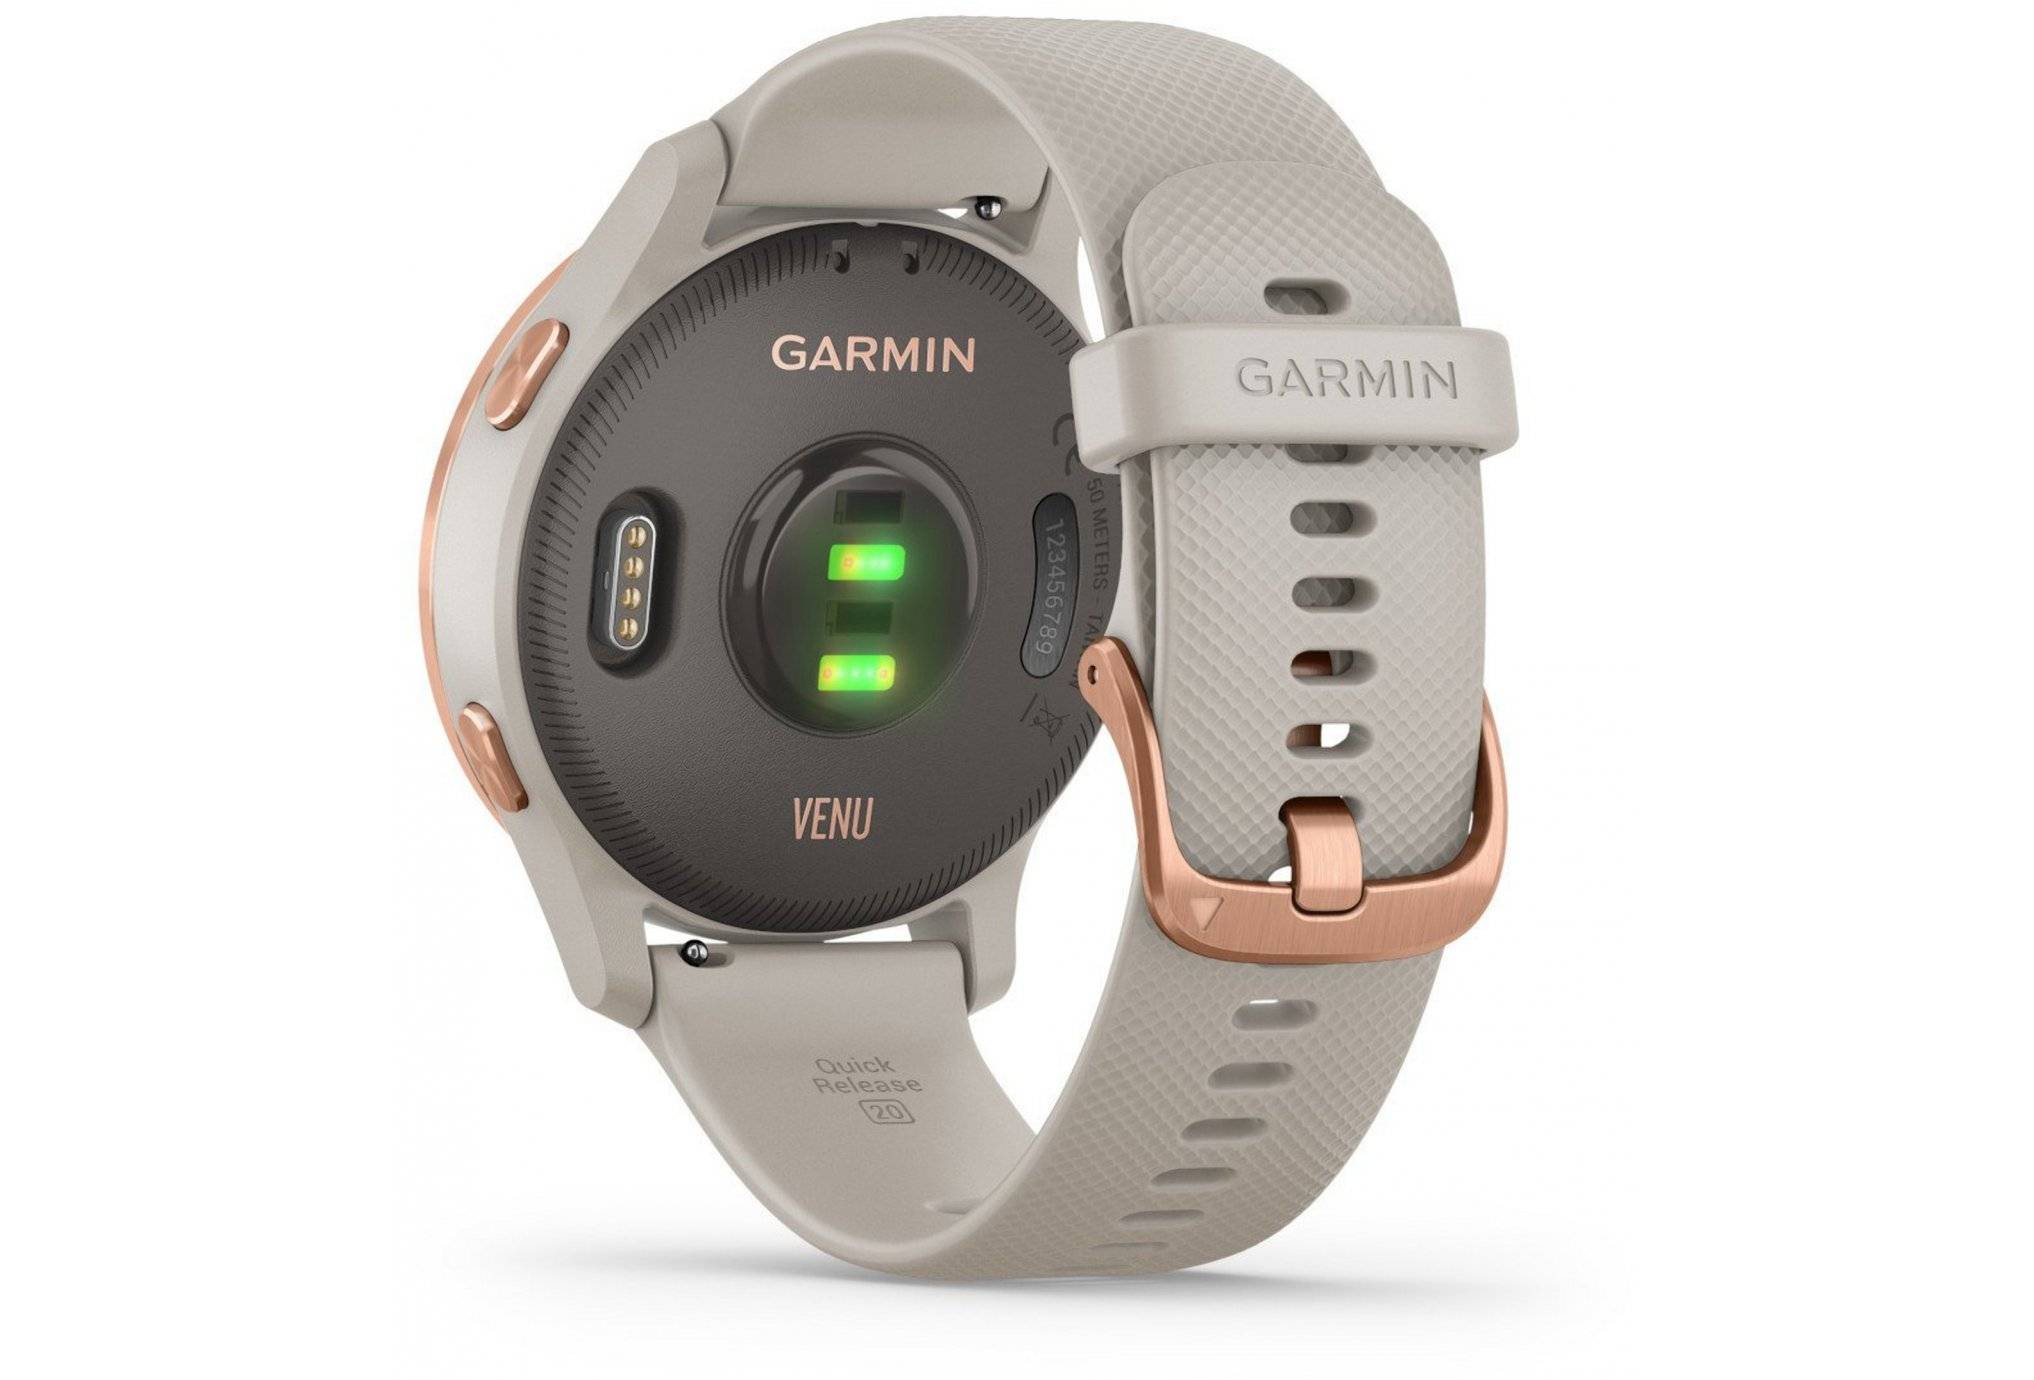  la montre connectée Garmin Venu à prix incroyable grâce à